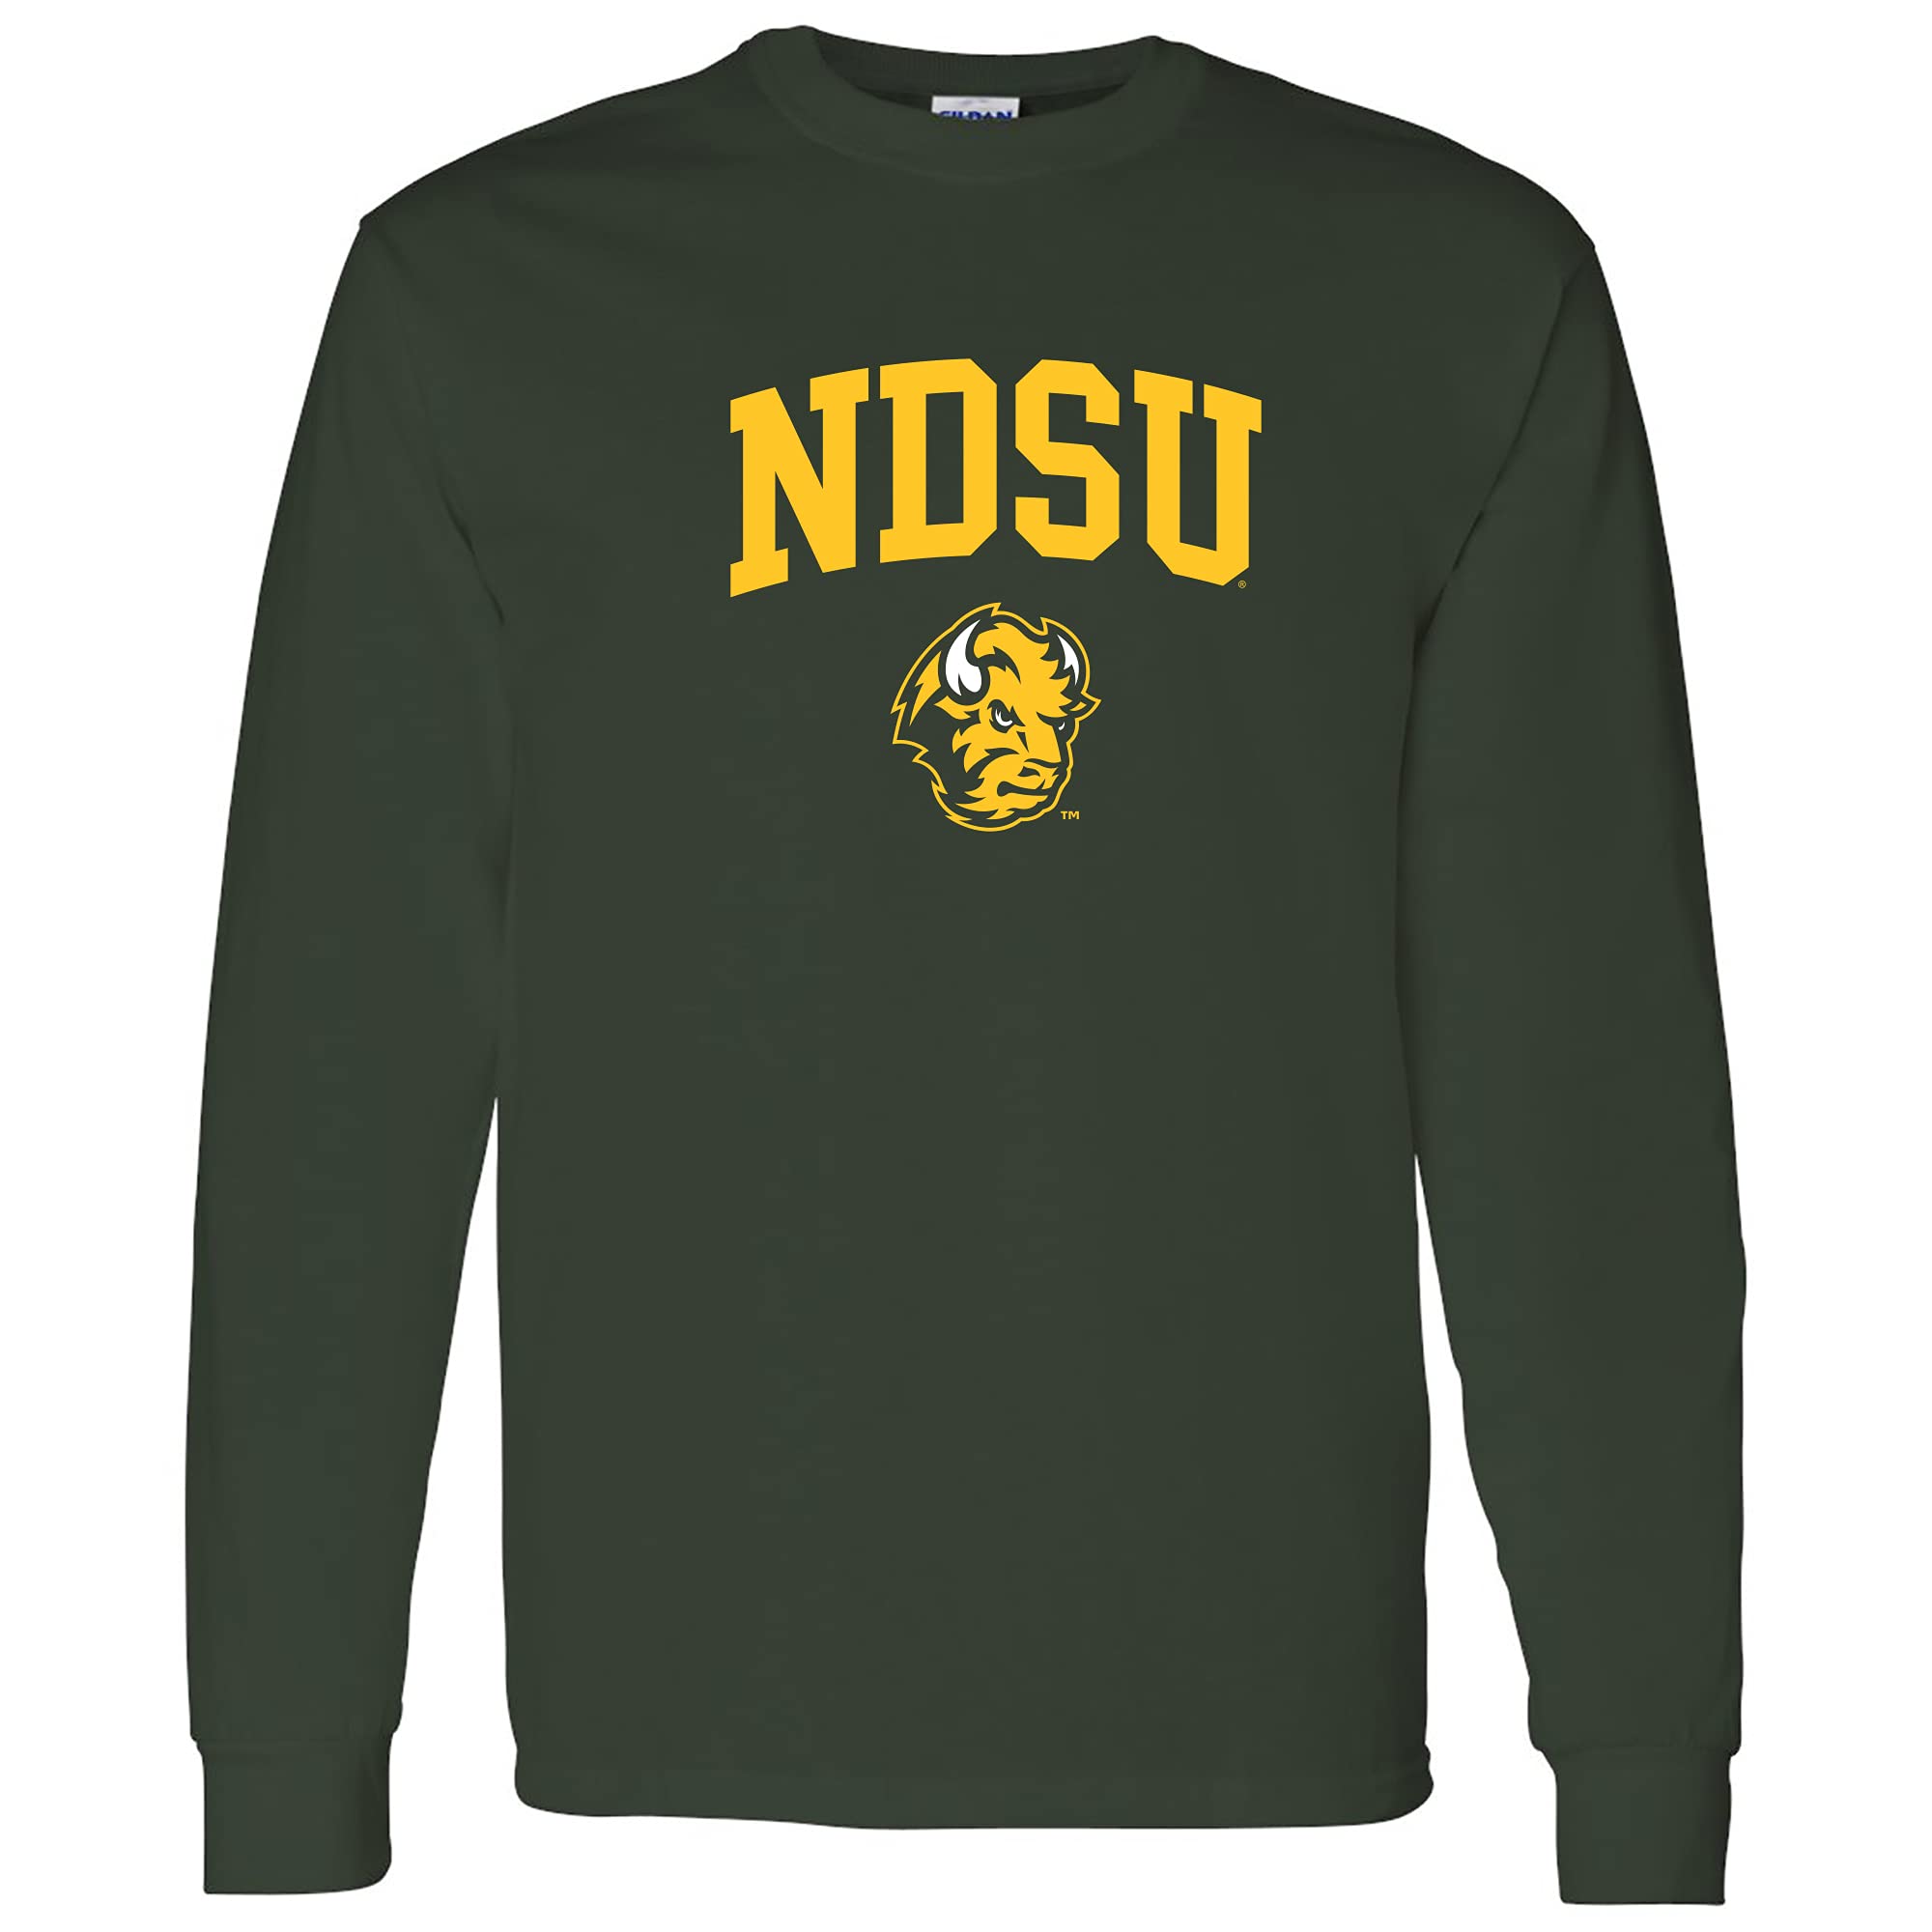 UGP Campus Apparel AL03 - North Dakota State Bison Arch Logo Long Sleeve T Shirt - Large - Forest